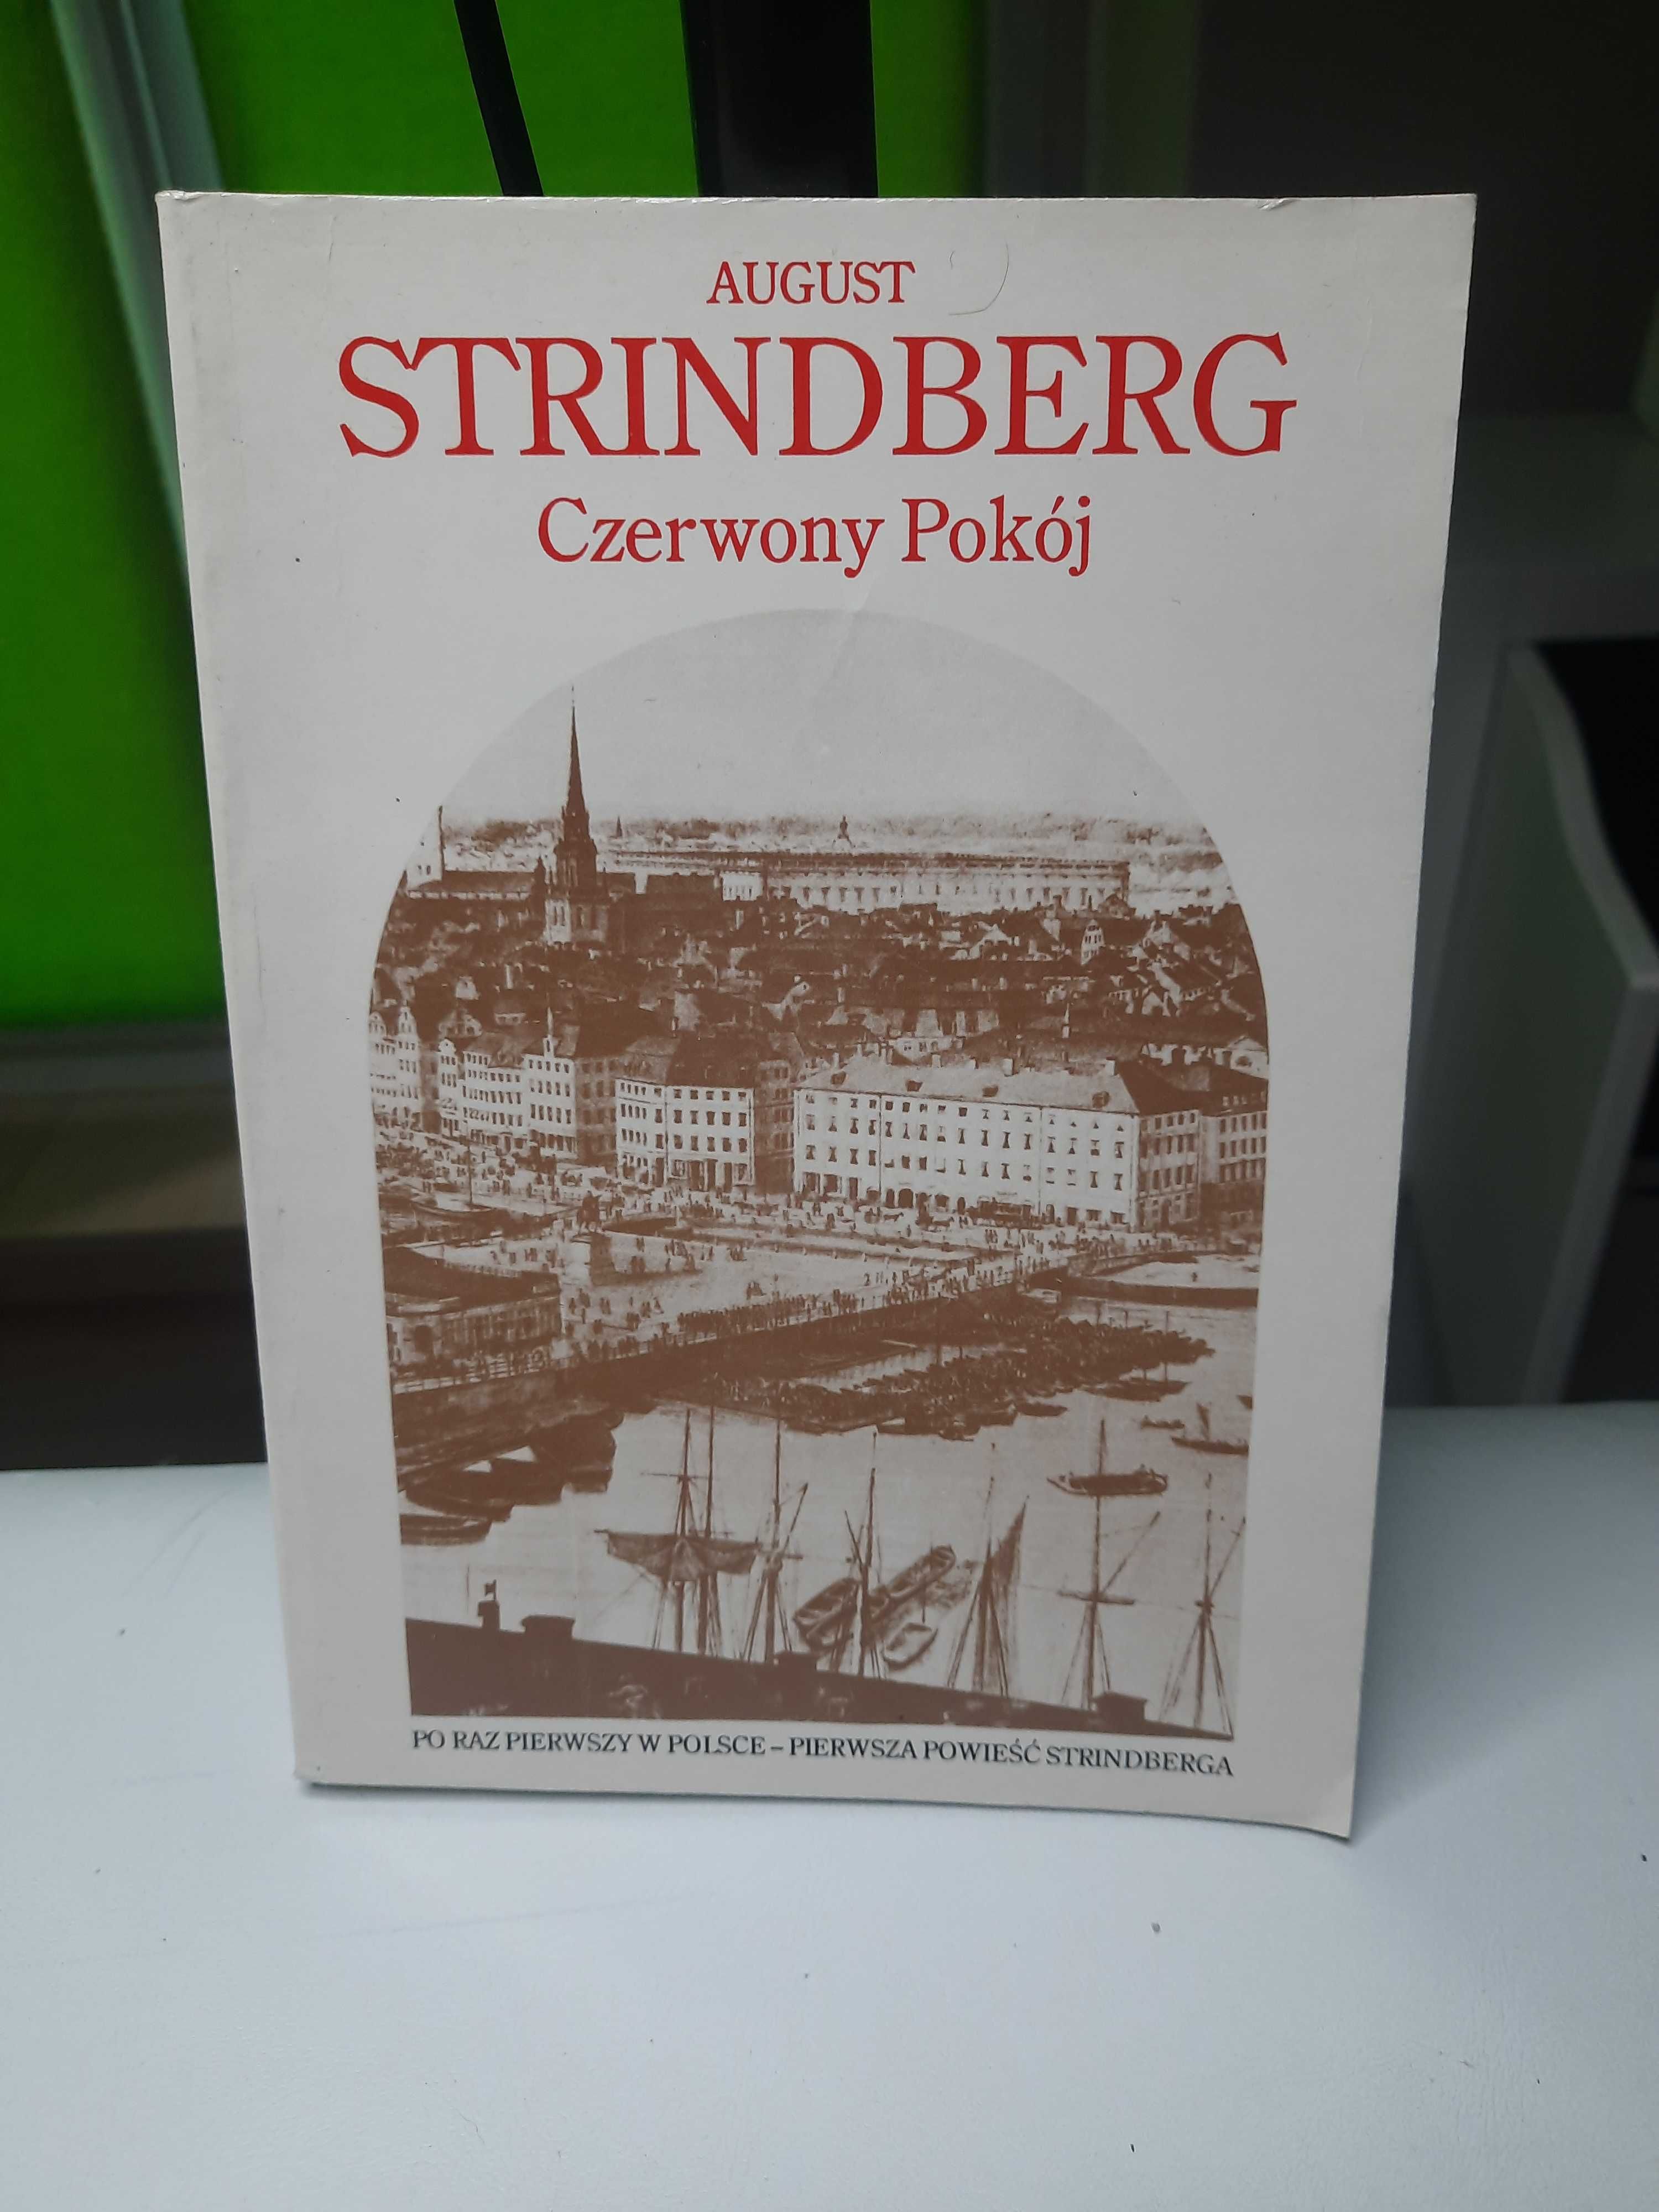 August Strindberg "Czerwony Pokój"